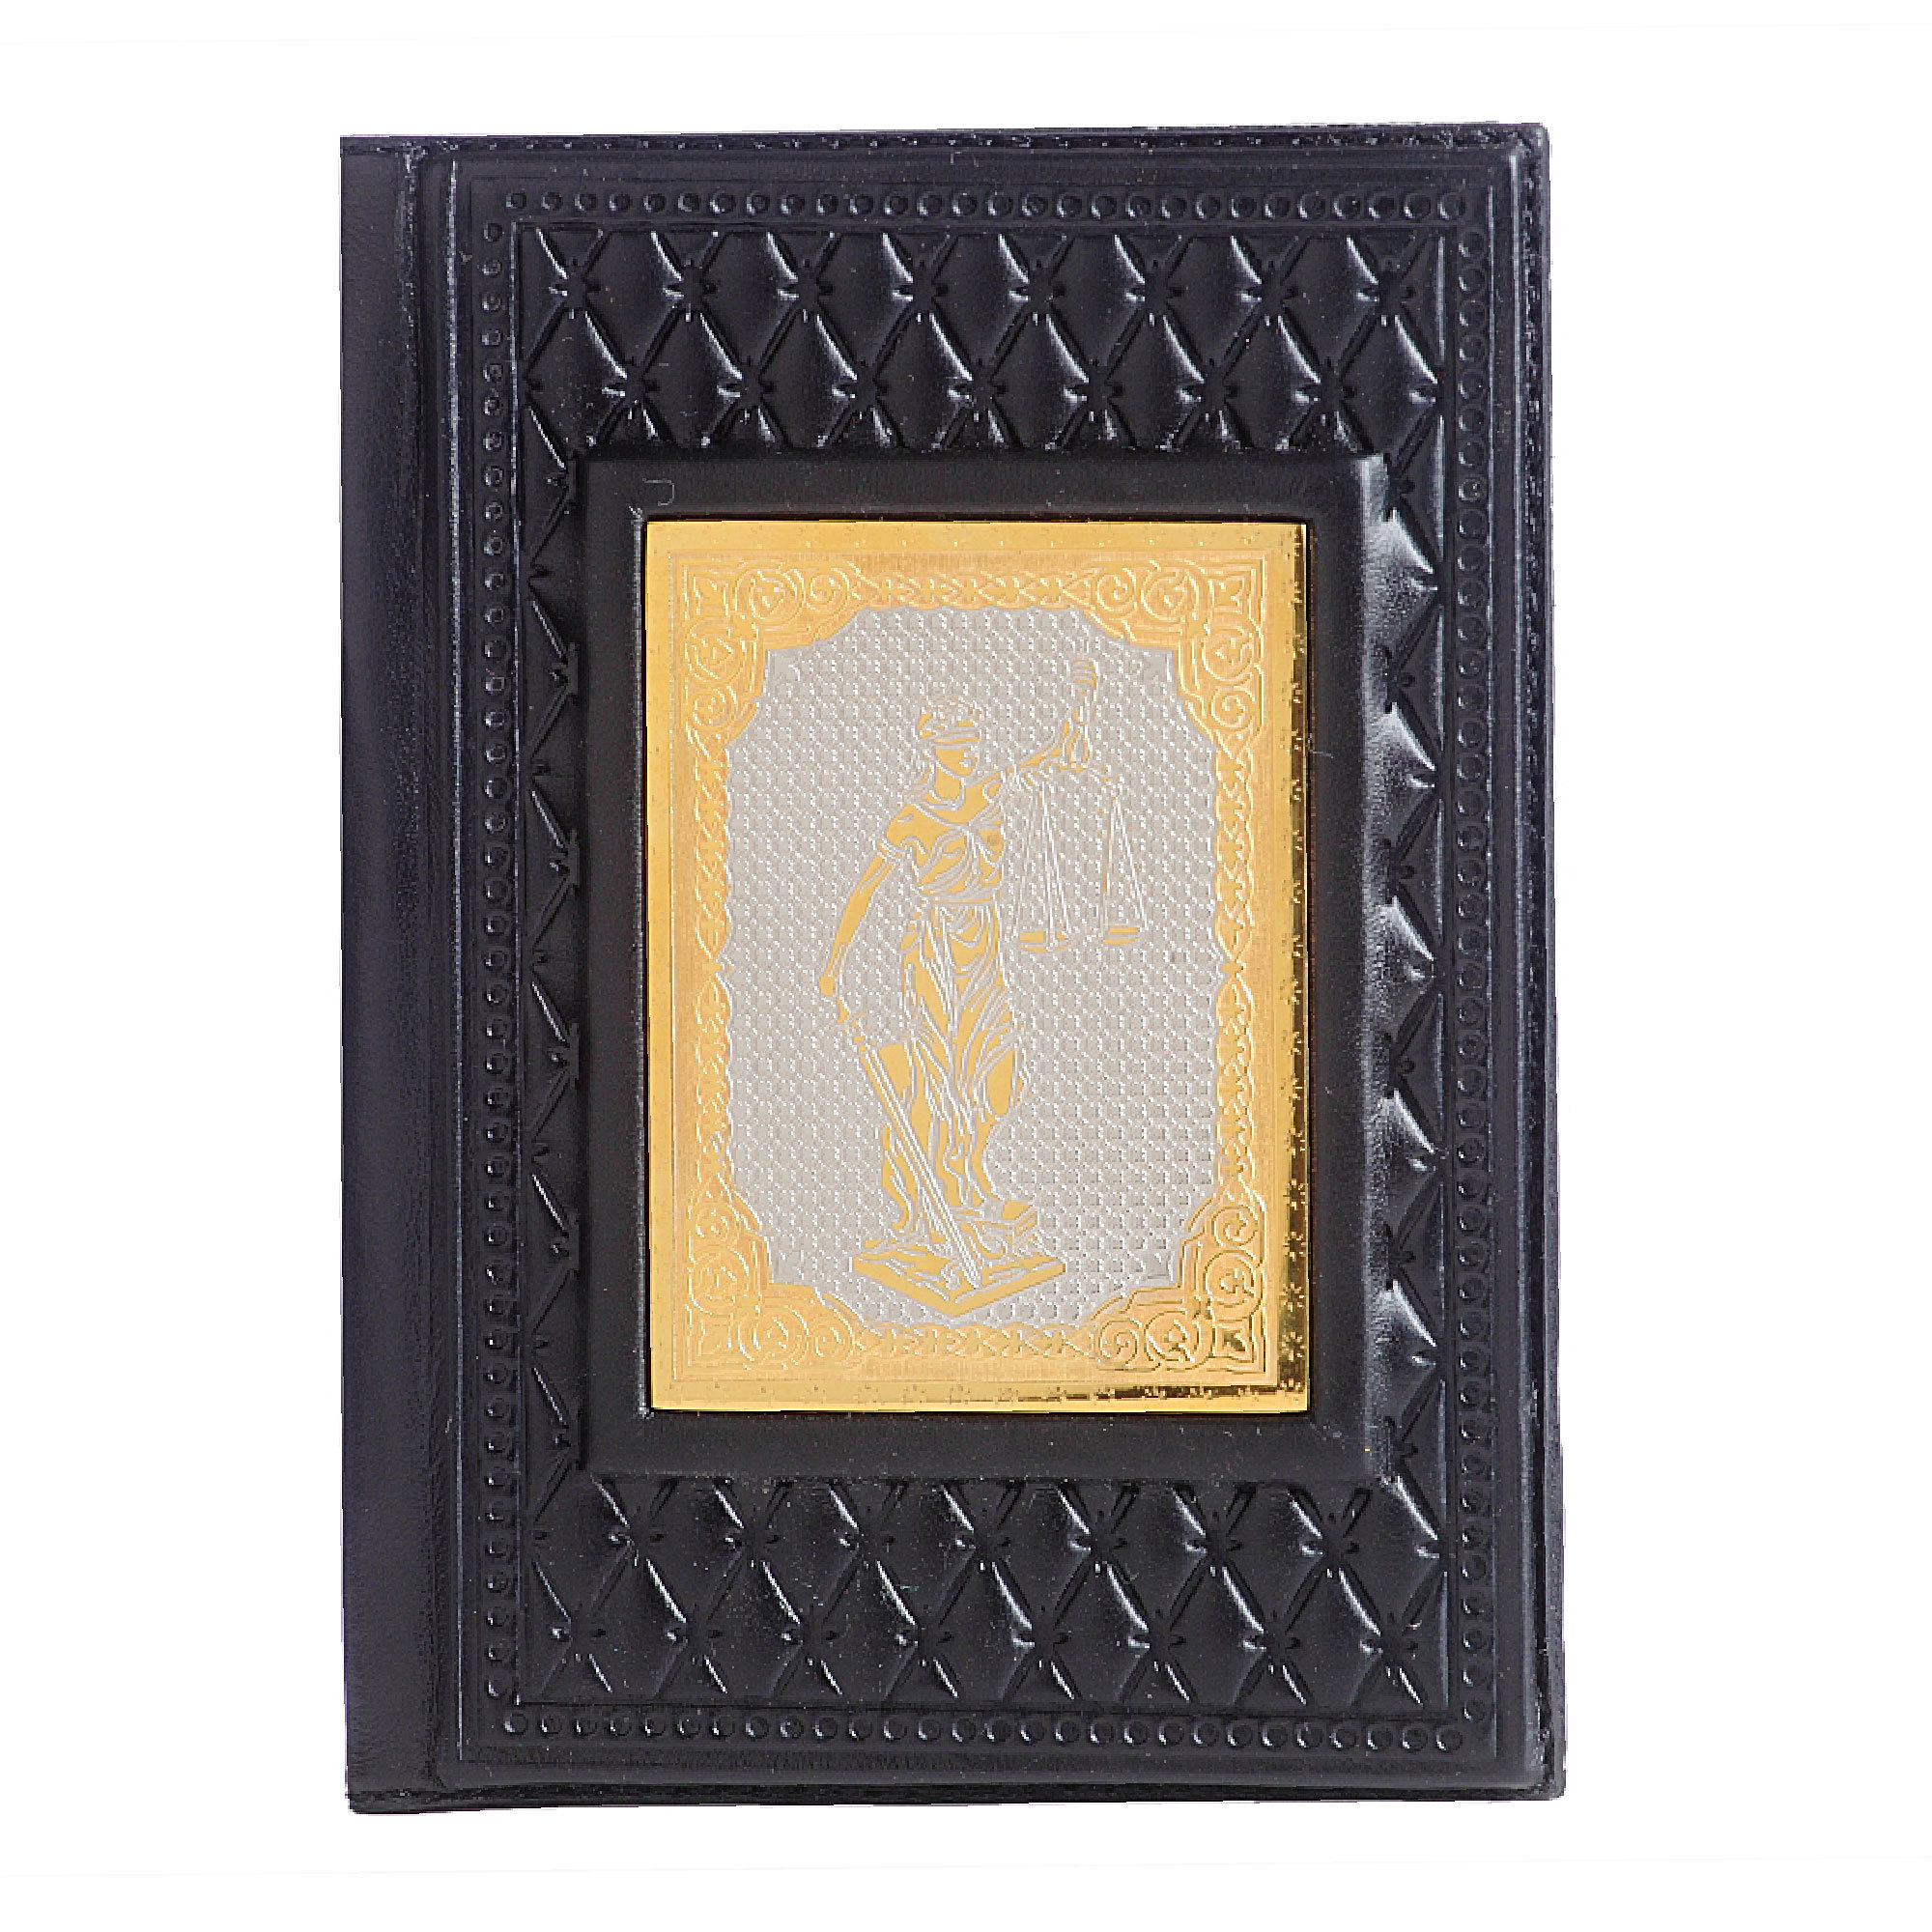 Обложка для паспорта Фемида-4 с накладкой покрытой золотом 999 пробы 009-14-62-1 